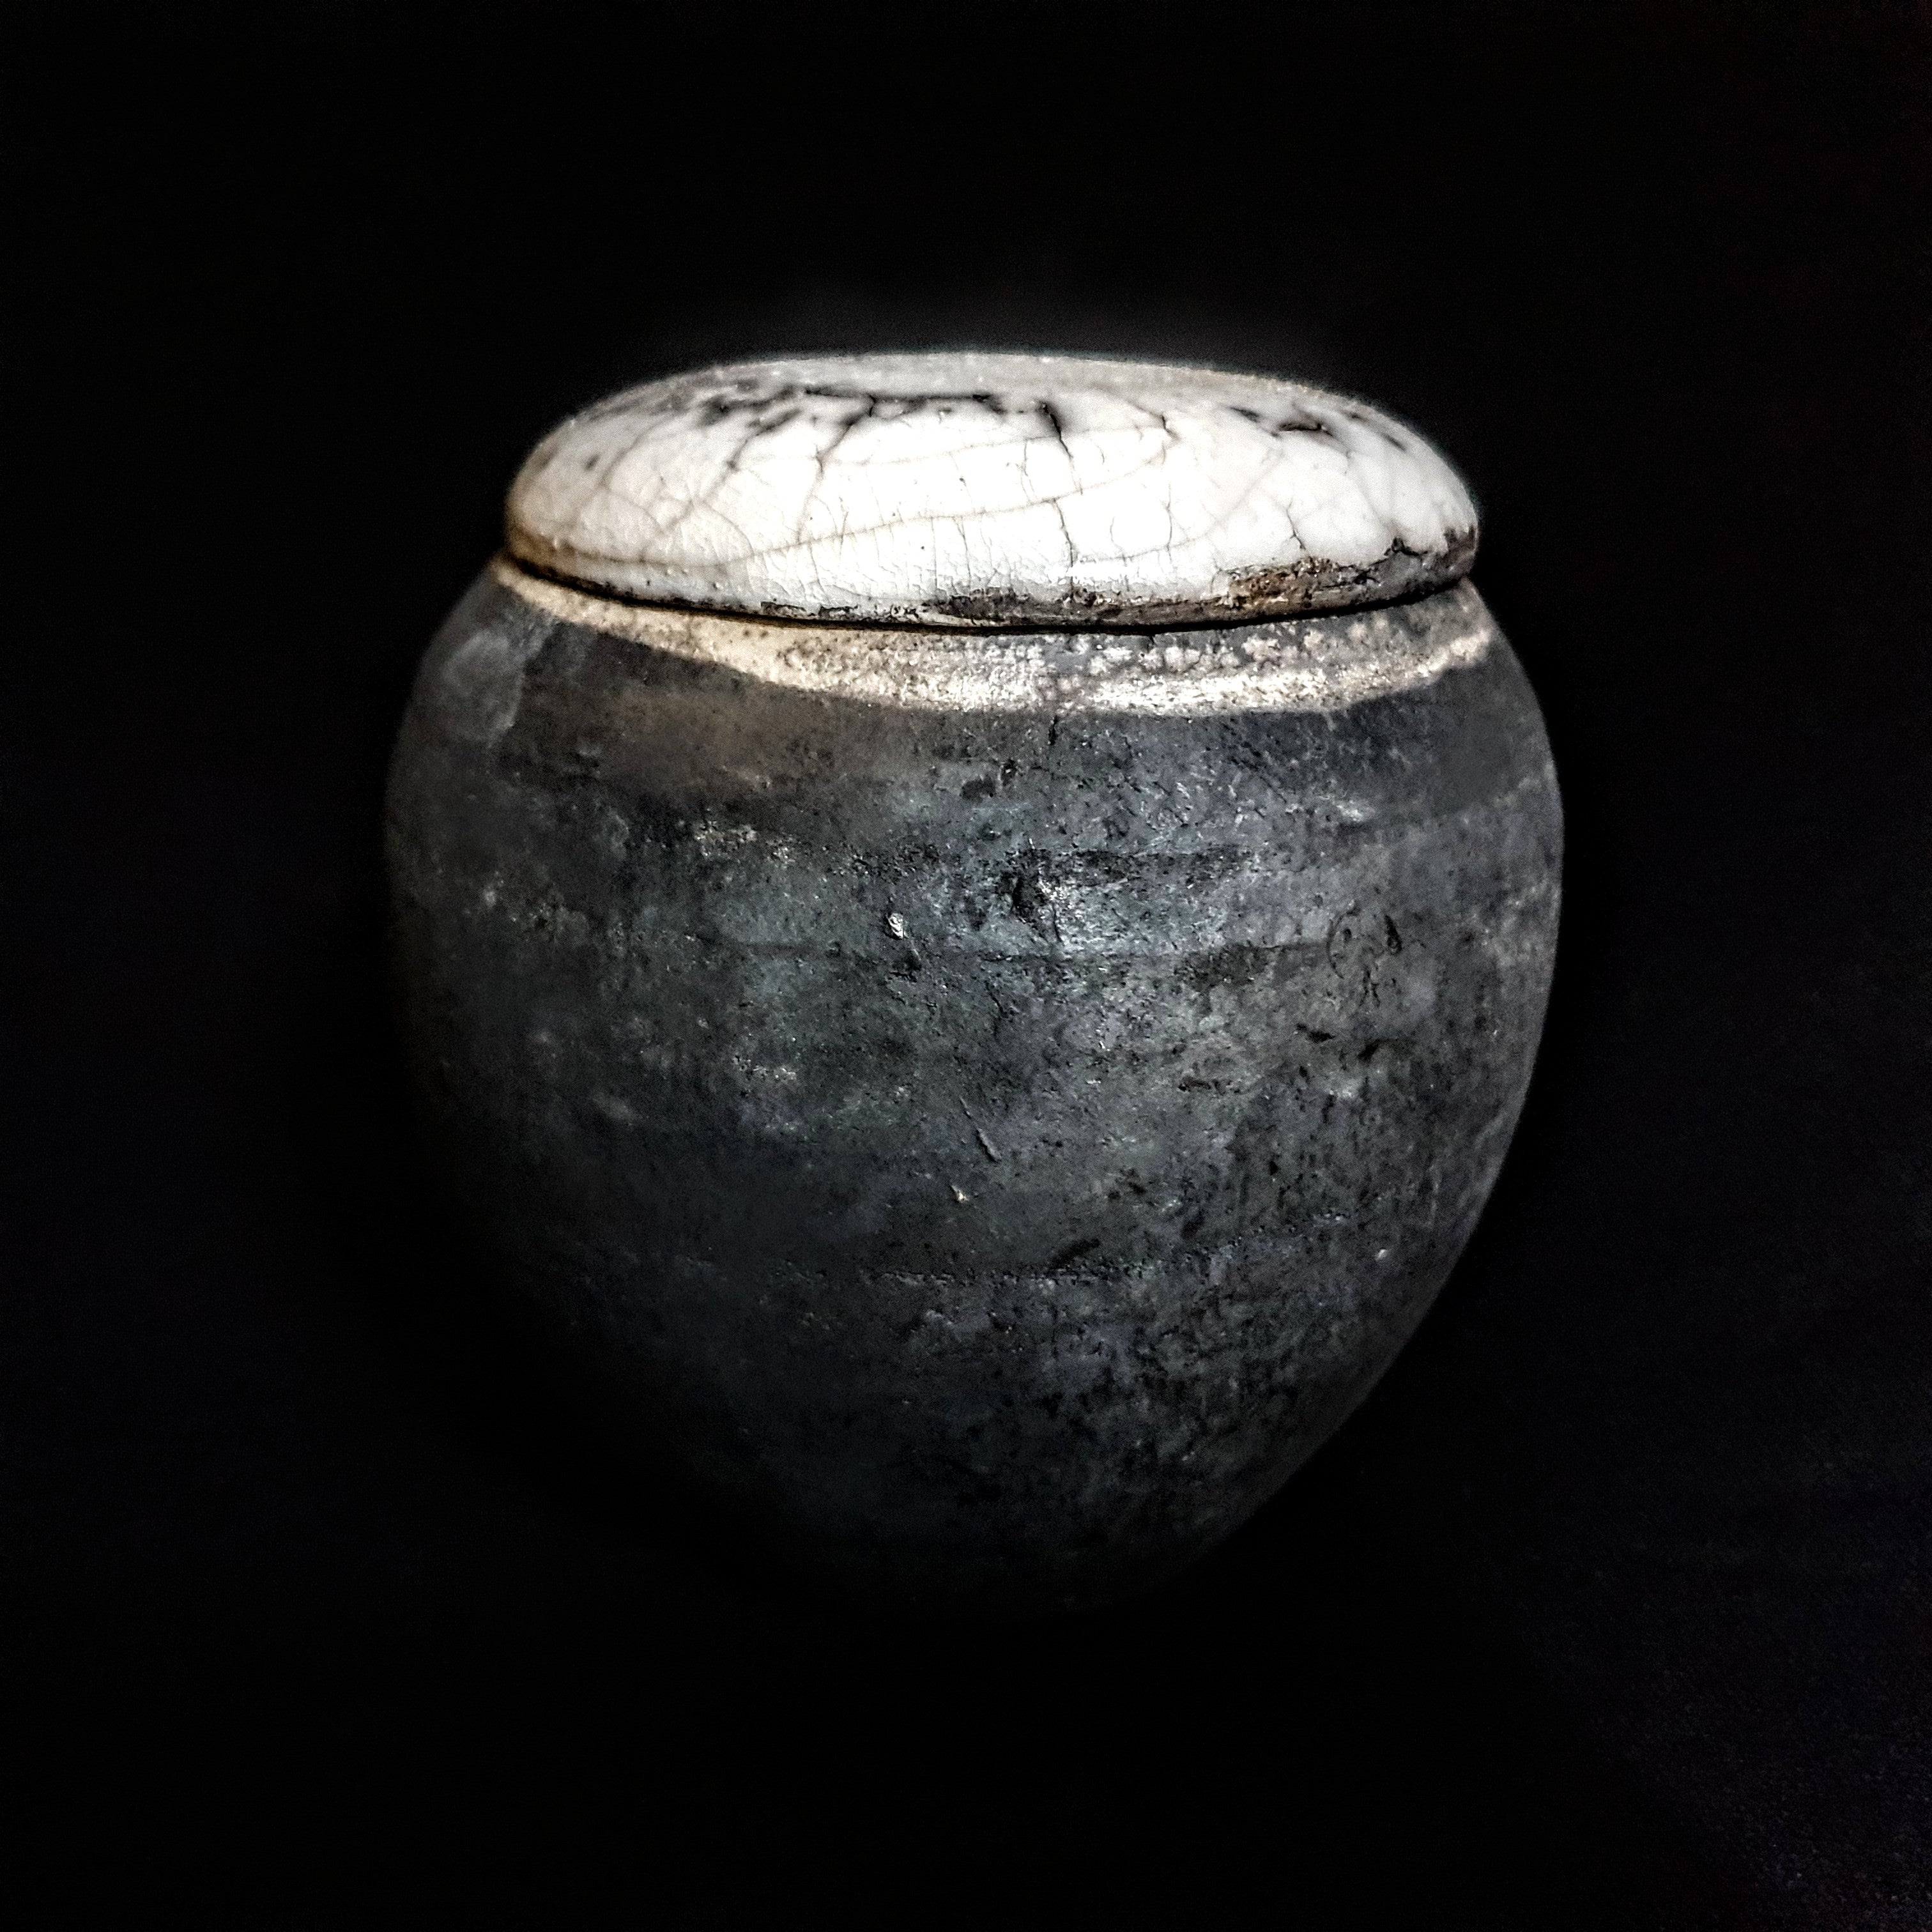 Unique Black Ceramic Pet Urn | One-of-a-Kind Raku Urn | Handmade Keepsake Urn for Pets | Modern Artistic Urn | Urn for Ashes